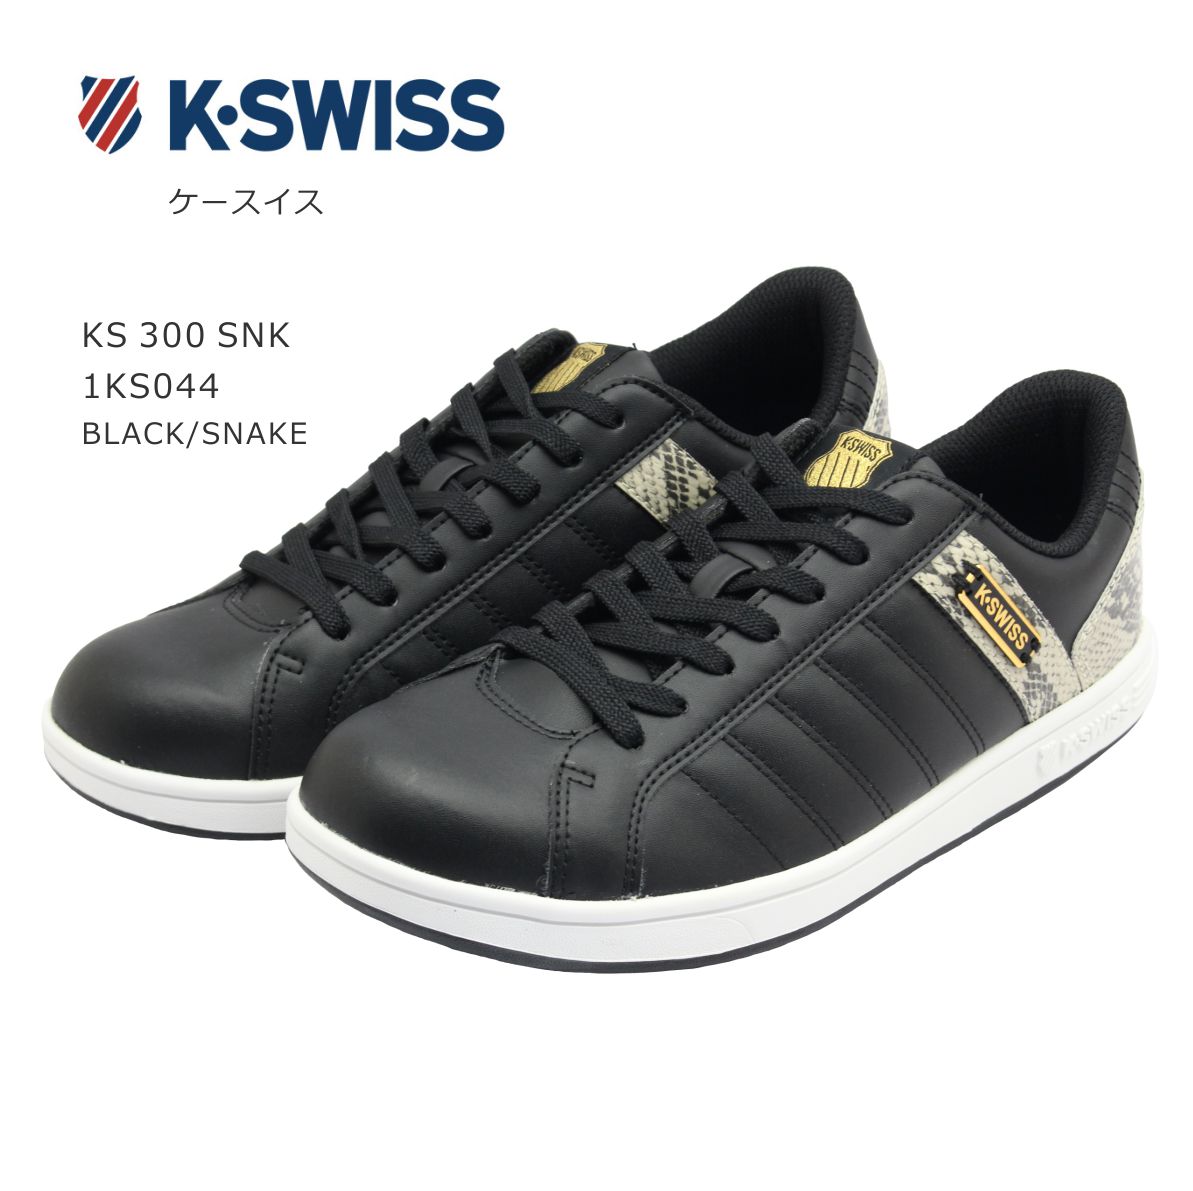 ケースイス スニーカー メンズ K-SWISS ケー スイス メンズ スニーカー KS 300 SNK シューズ 靴 黒 蛇 ブラック スネーク